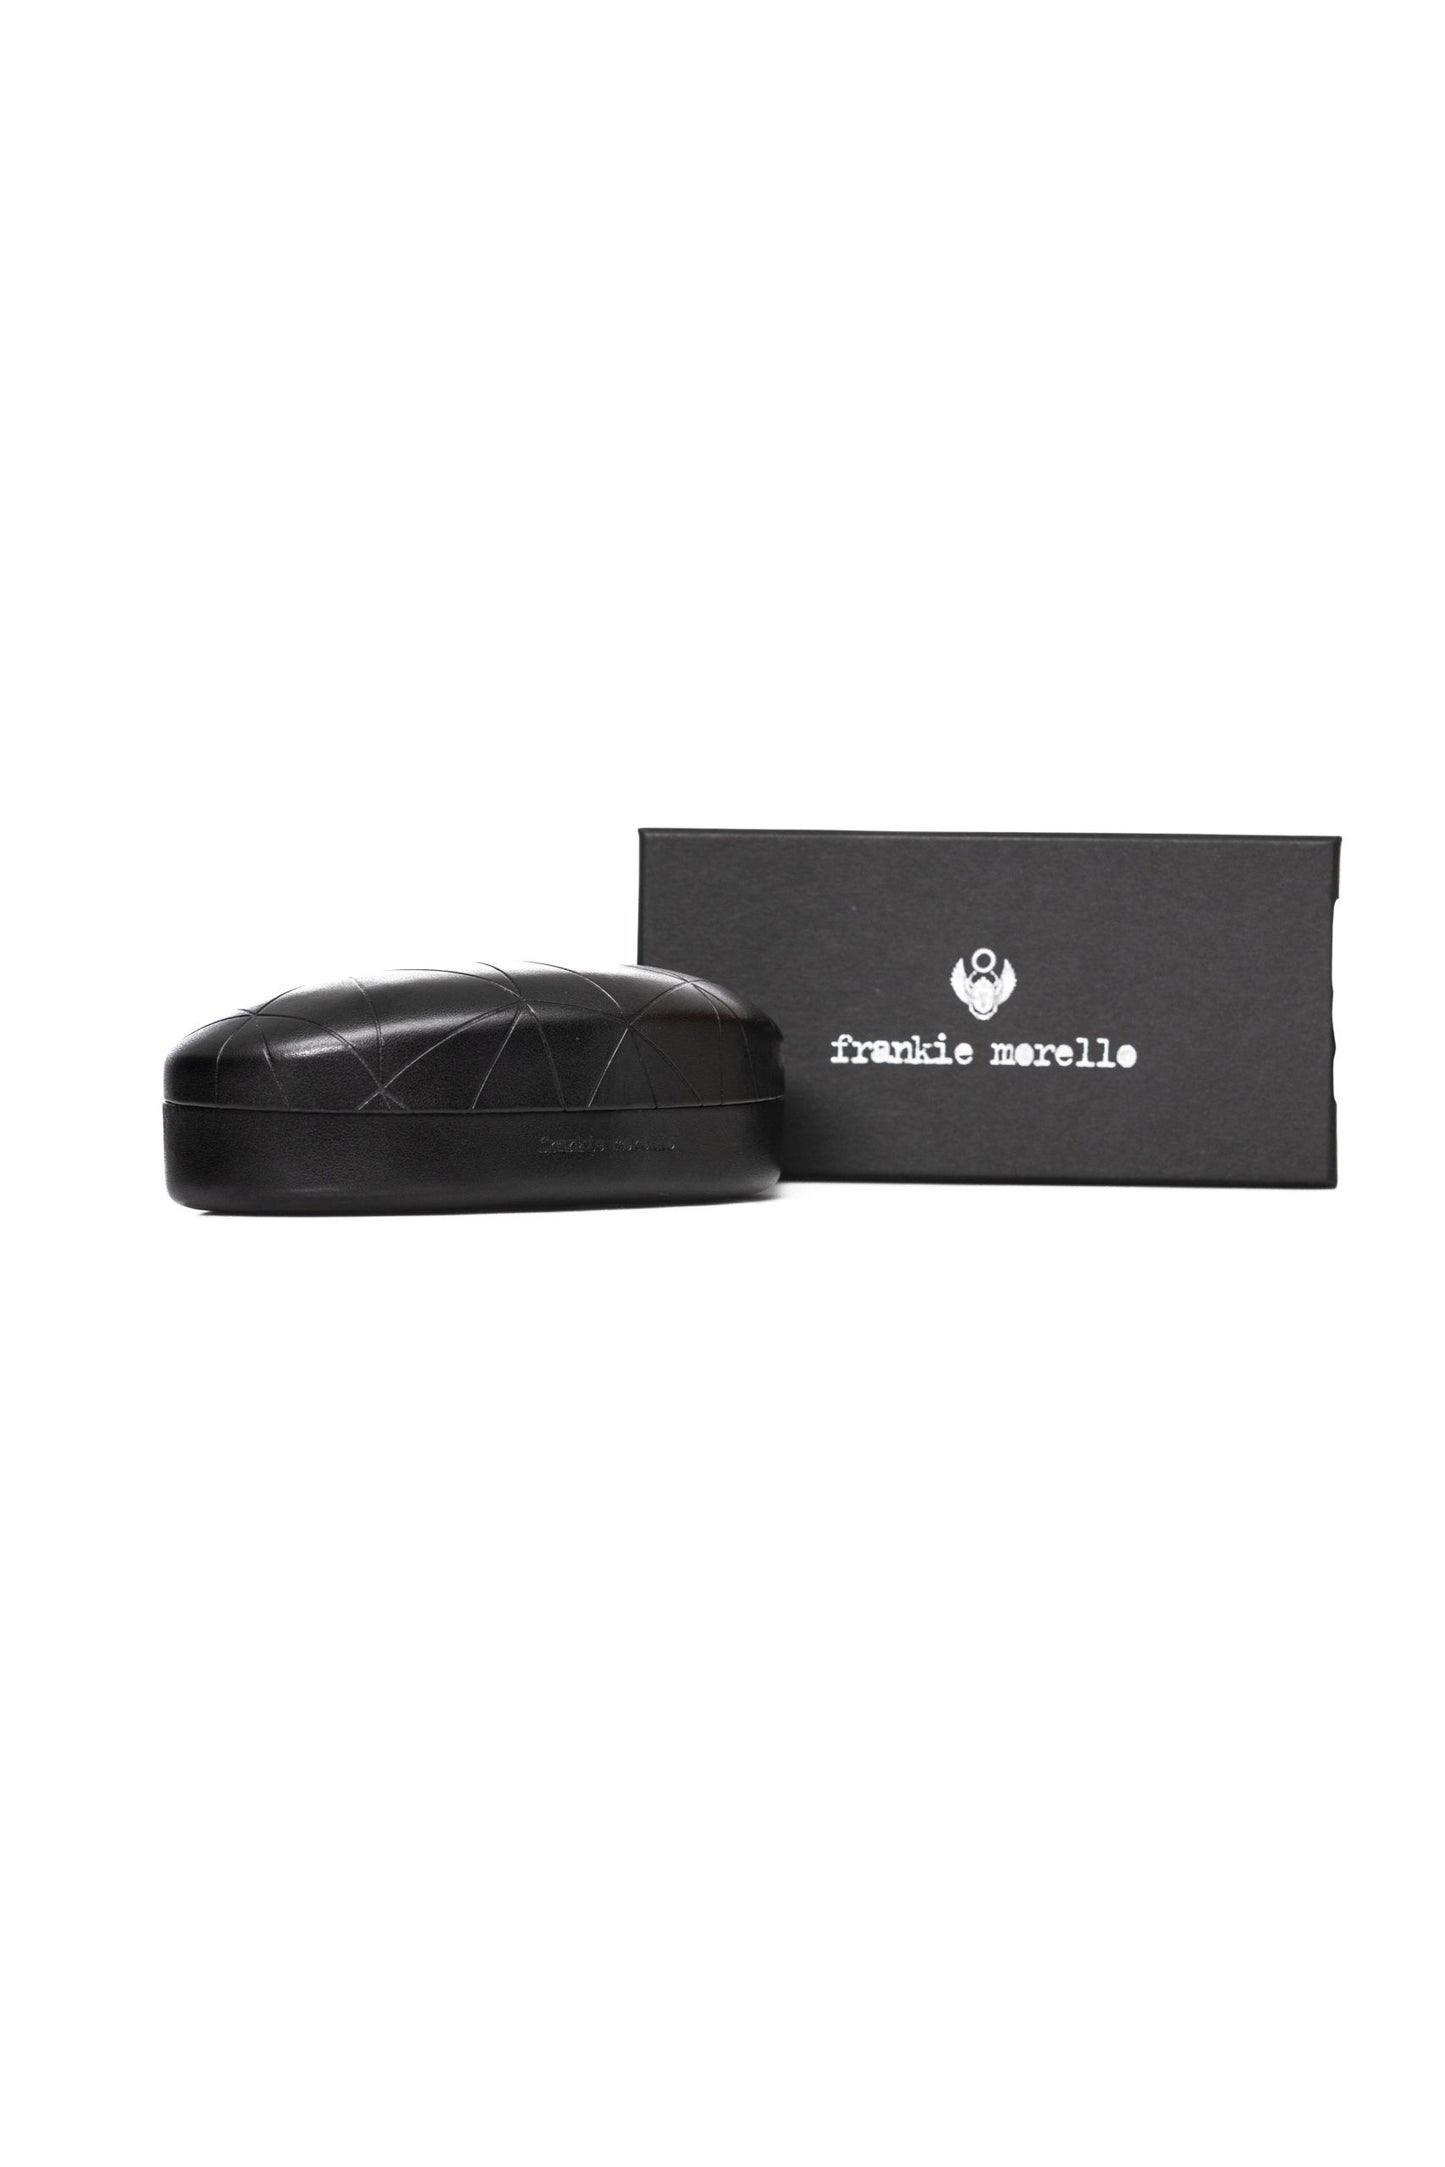 Frankie Morello FRMO-22137 Silver Metallic Fibre Sunglasses